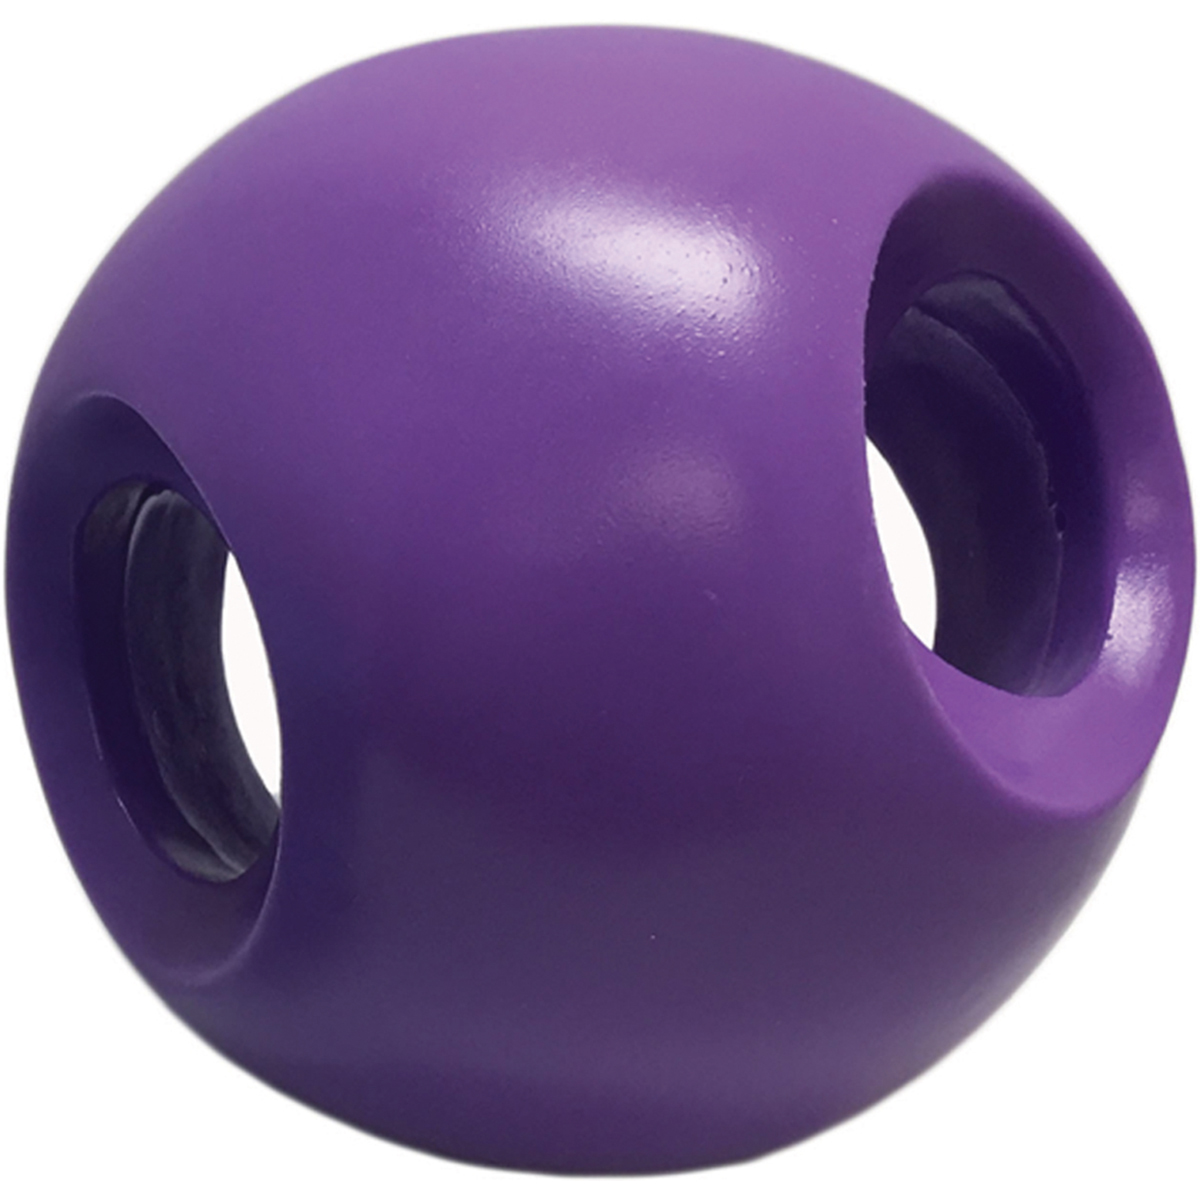 6655 Purple Powerhouse Ball - 5.5 In.